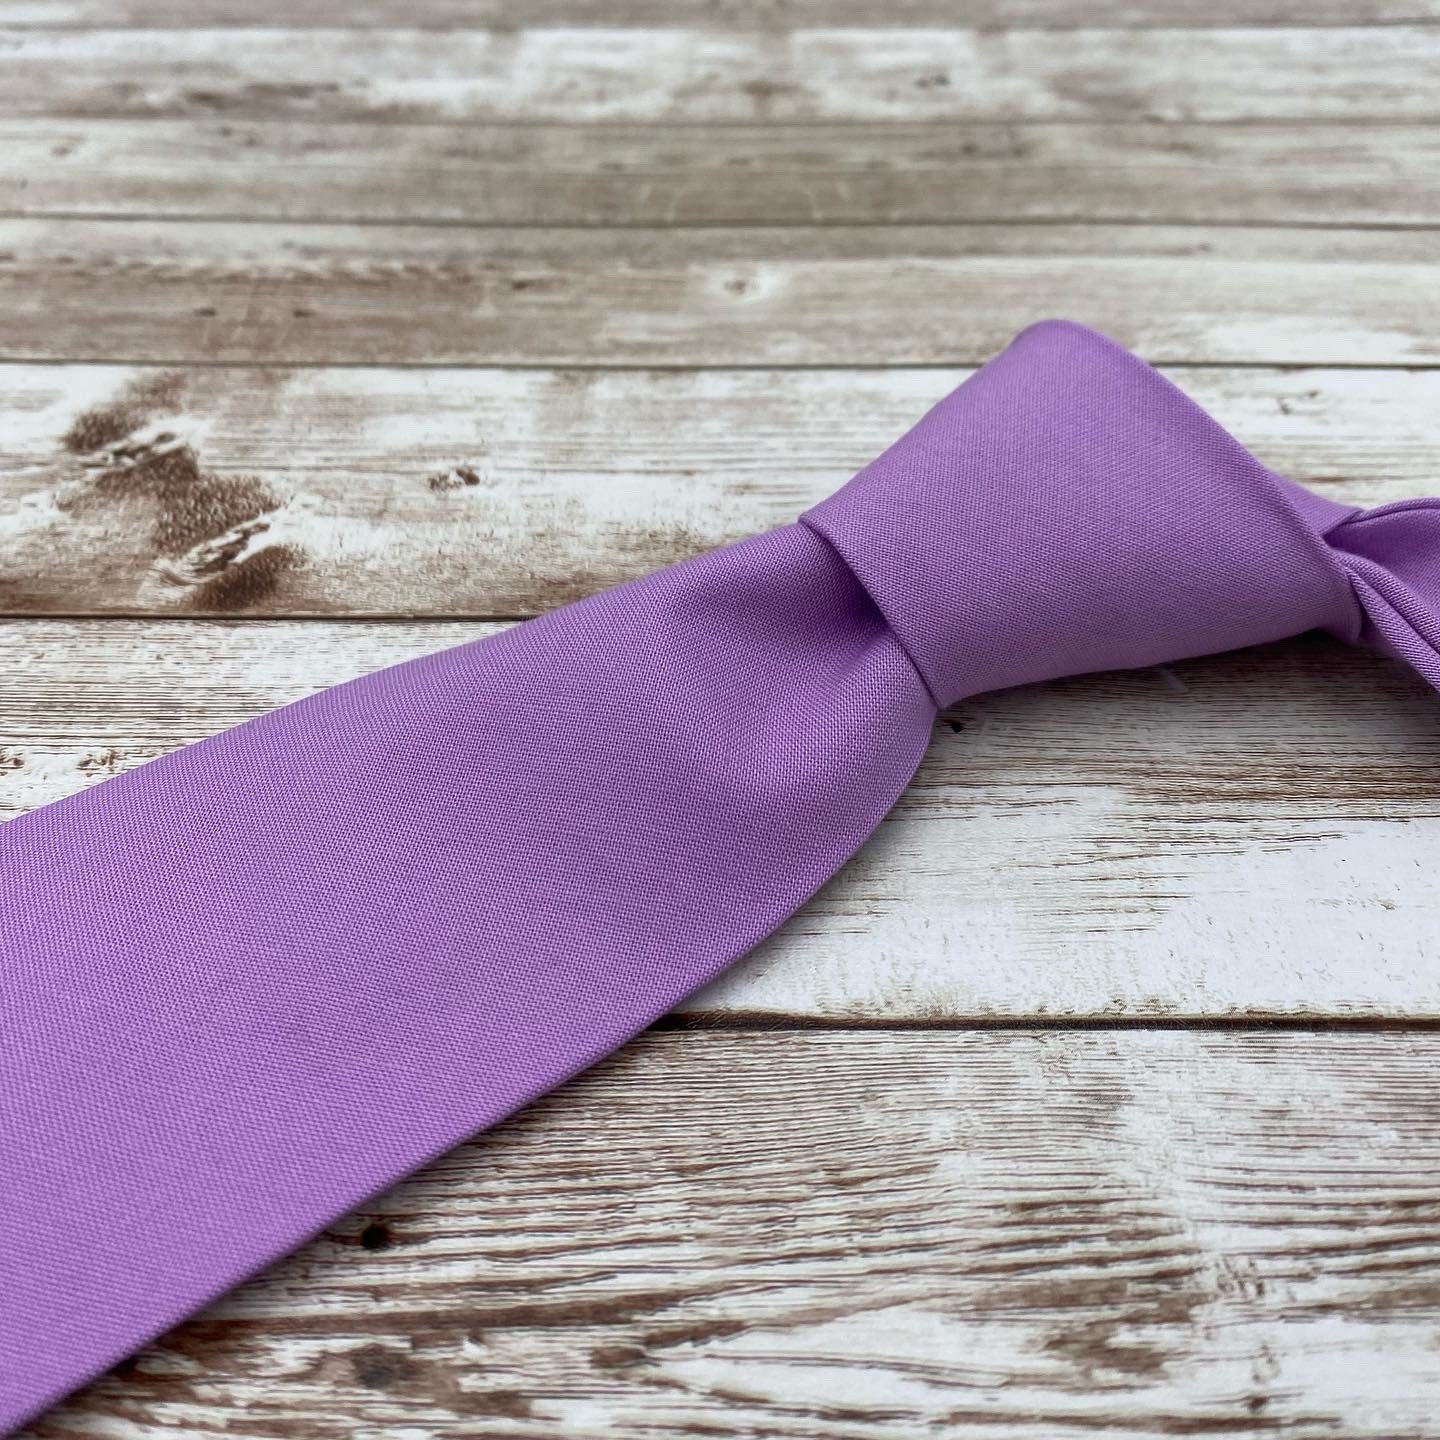 Lavendel stropdas lila paarse stropdassen - Etsy